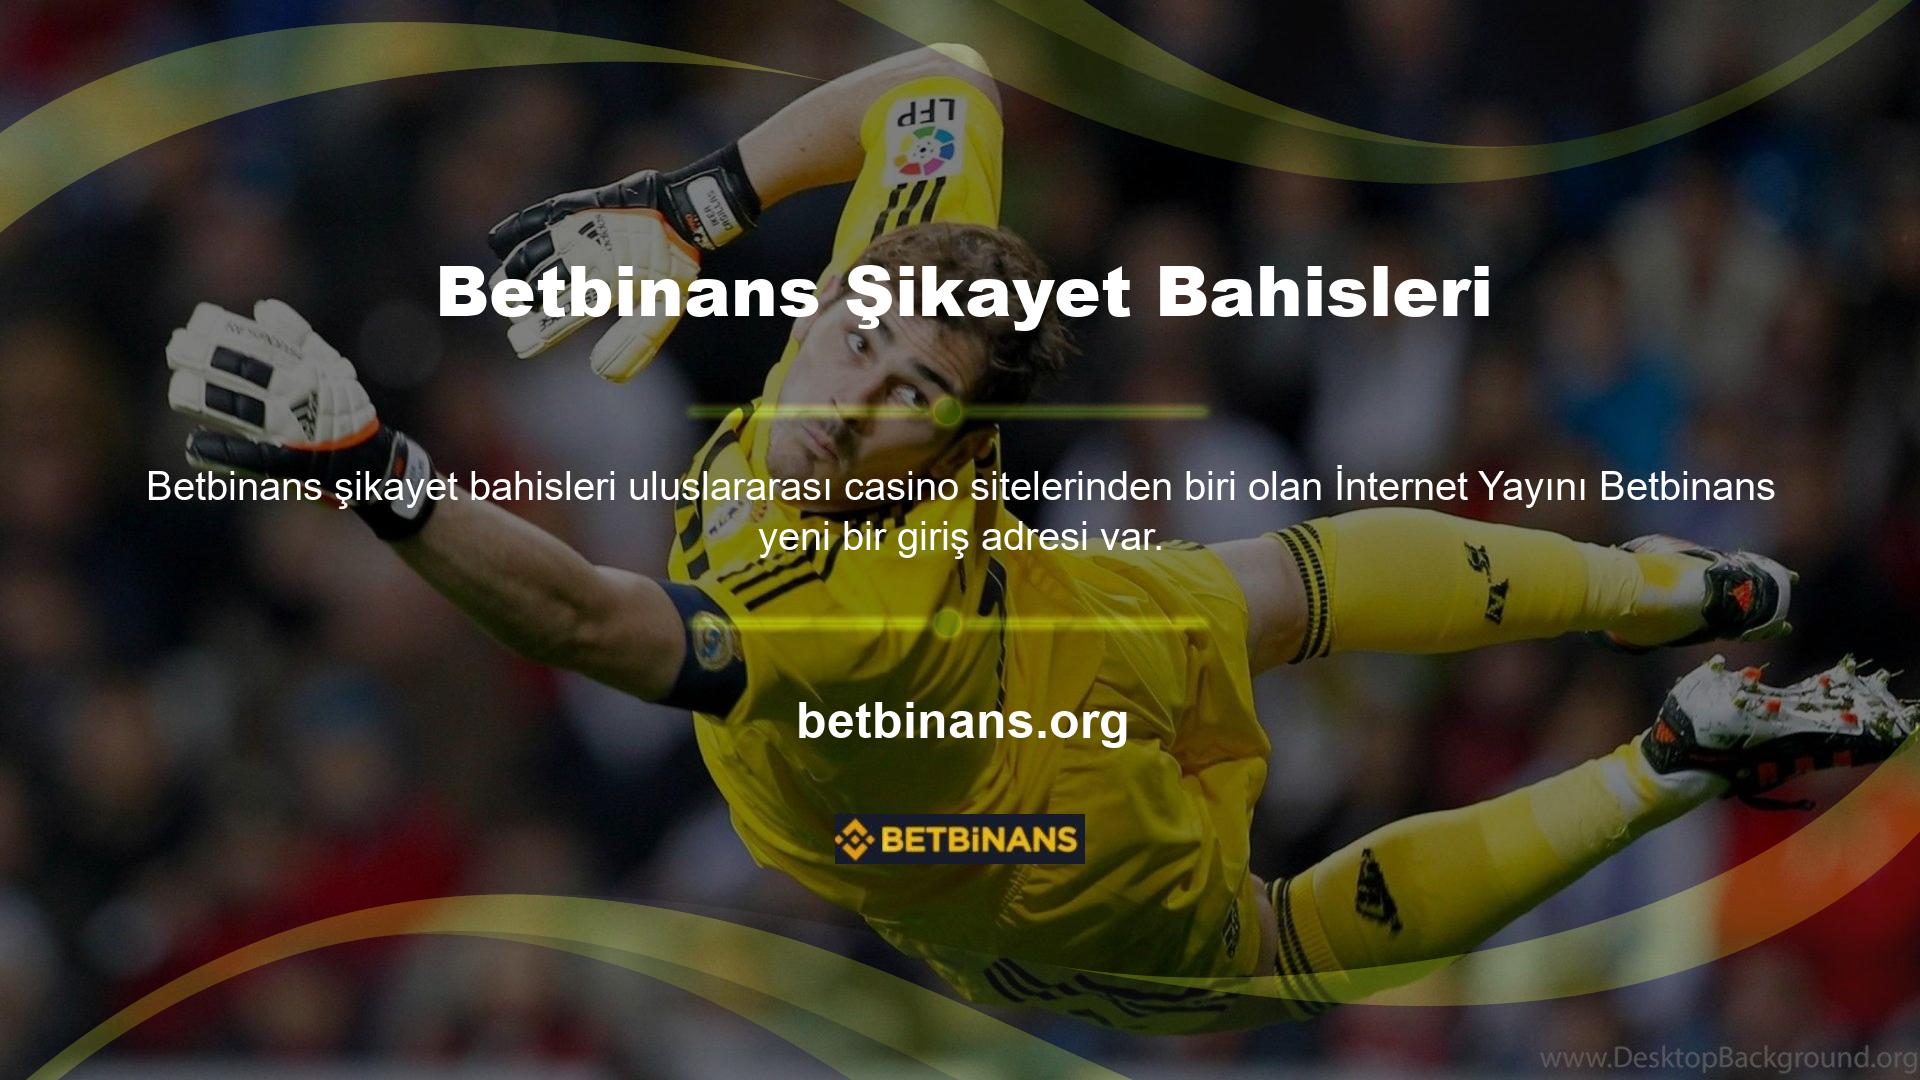 Dünyanın birçok ülkesinde oluşturulan ve lanse edilen online bahis platformları, Betbinans aktif olarak yayın yapmakta ve çok çeşitli bahis ürünleri sunmaktadır